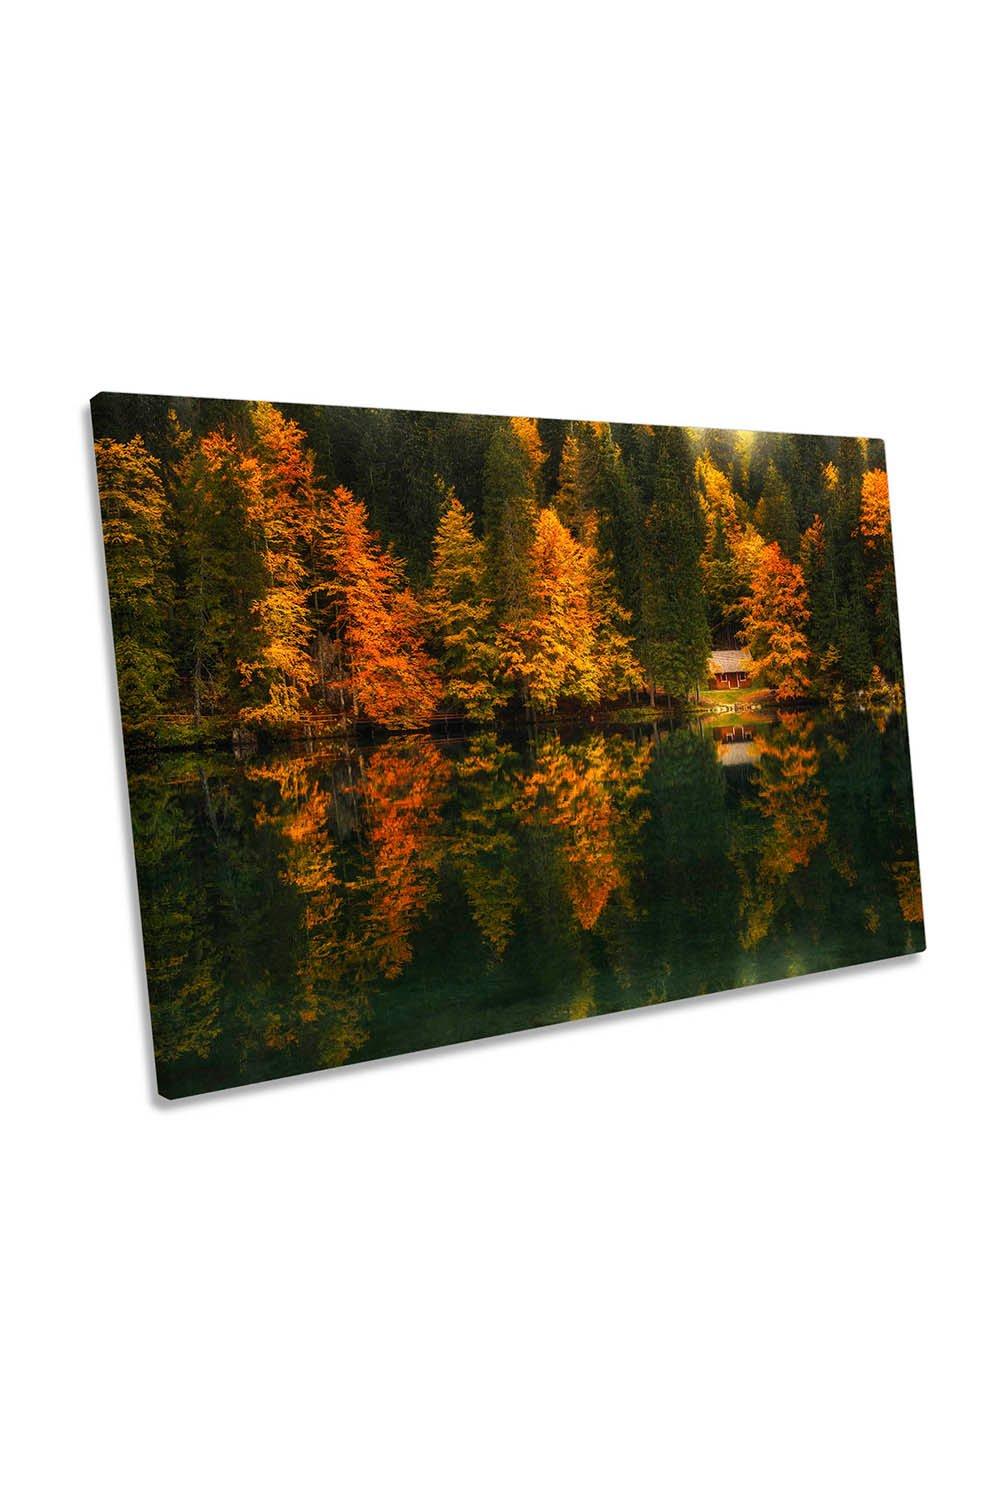 Autumn Impressions Lake Landscape Cottage Canvas Wall Art Picture Print